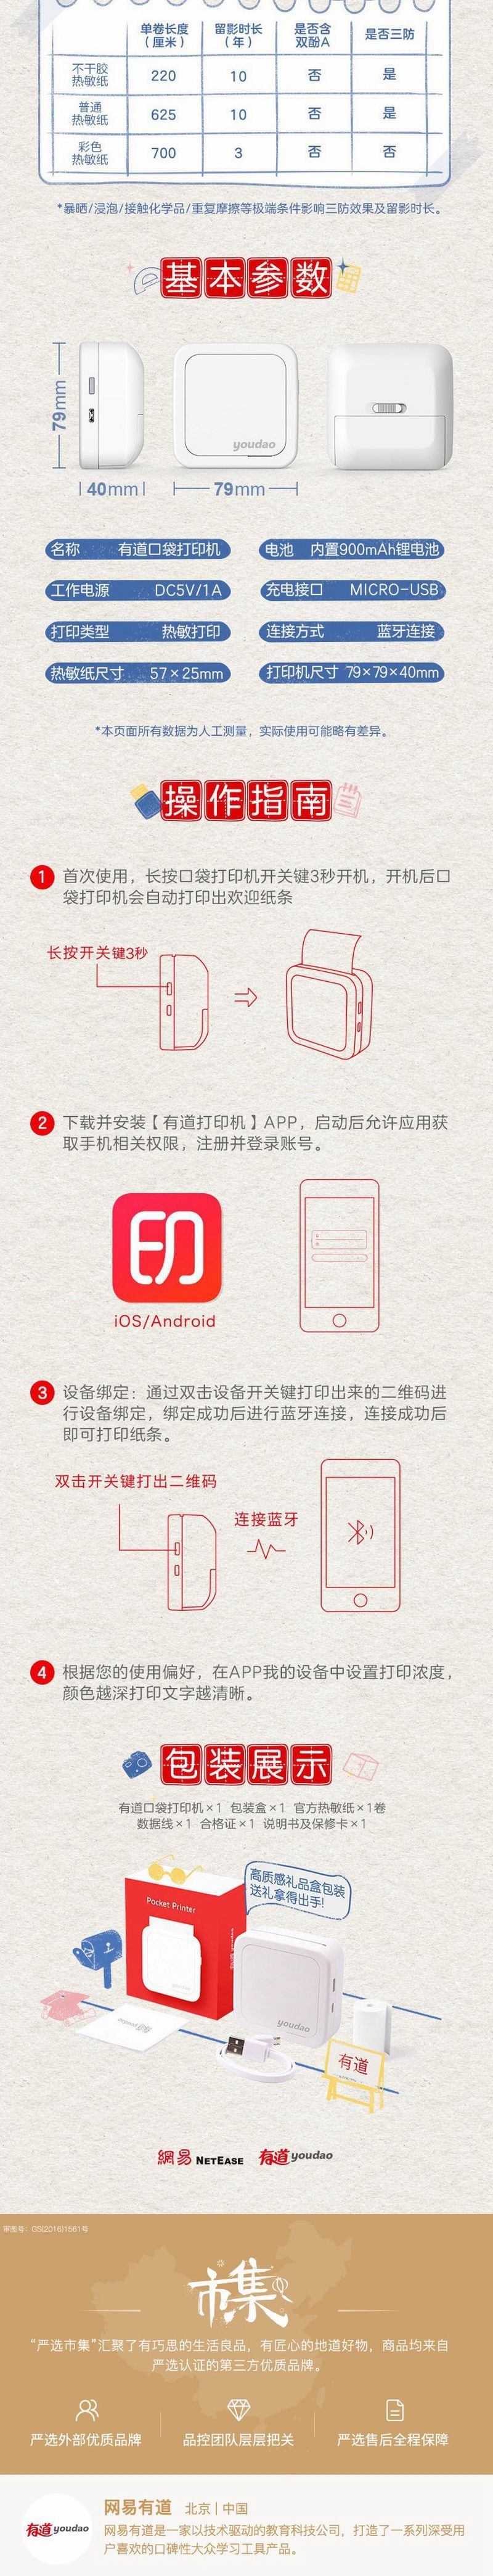 【香港DHL 5-7日达】网易智造 网易有道 口袋打印机 白色